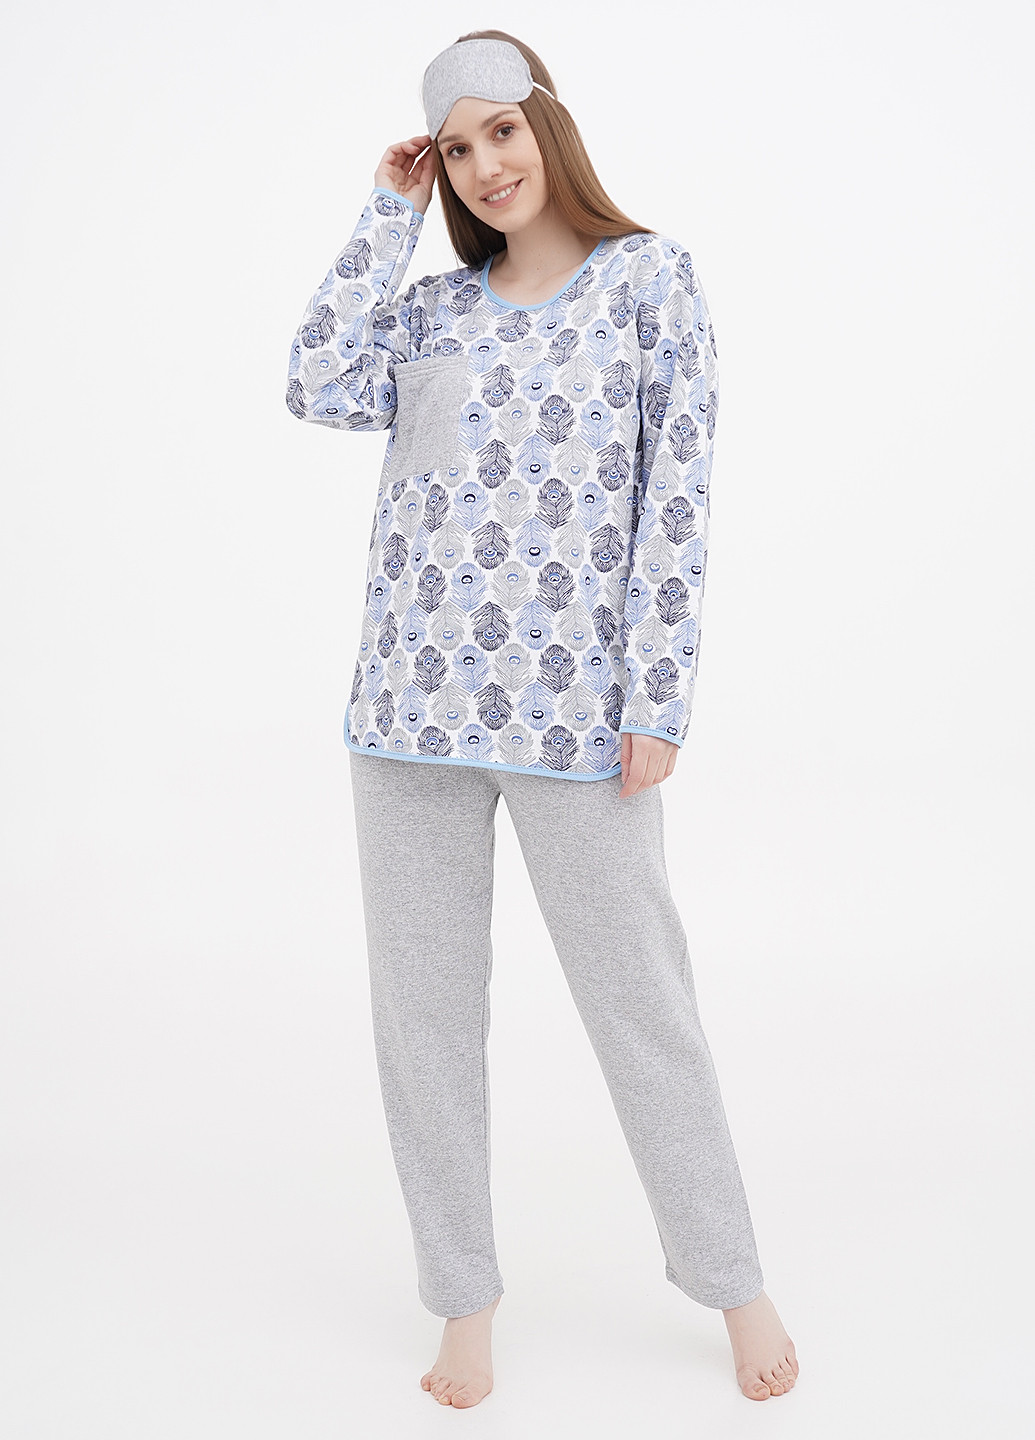 Комбинированная всесезон пижама (лонгслив, брюки, маска для сна) лонгслив + брюки Трикомир